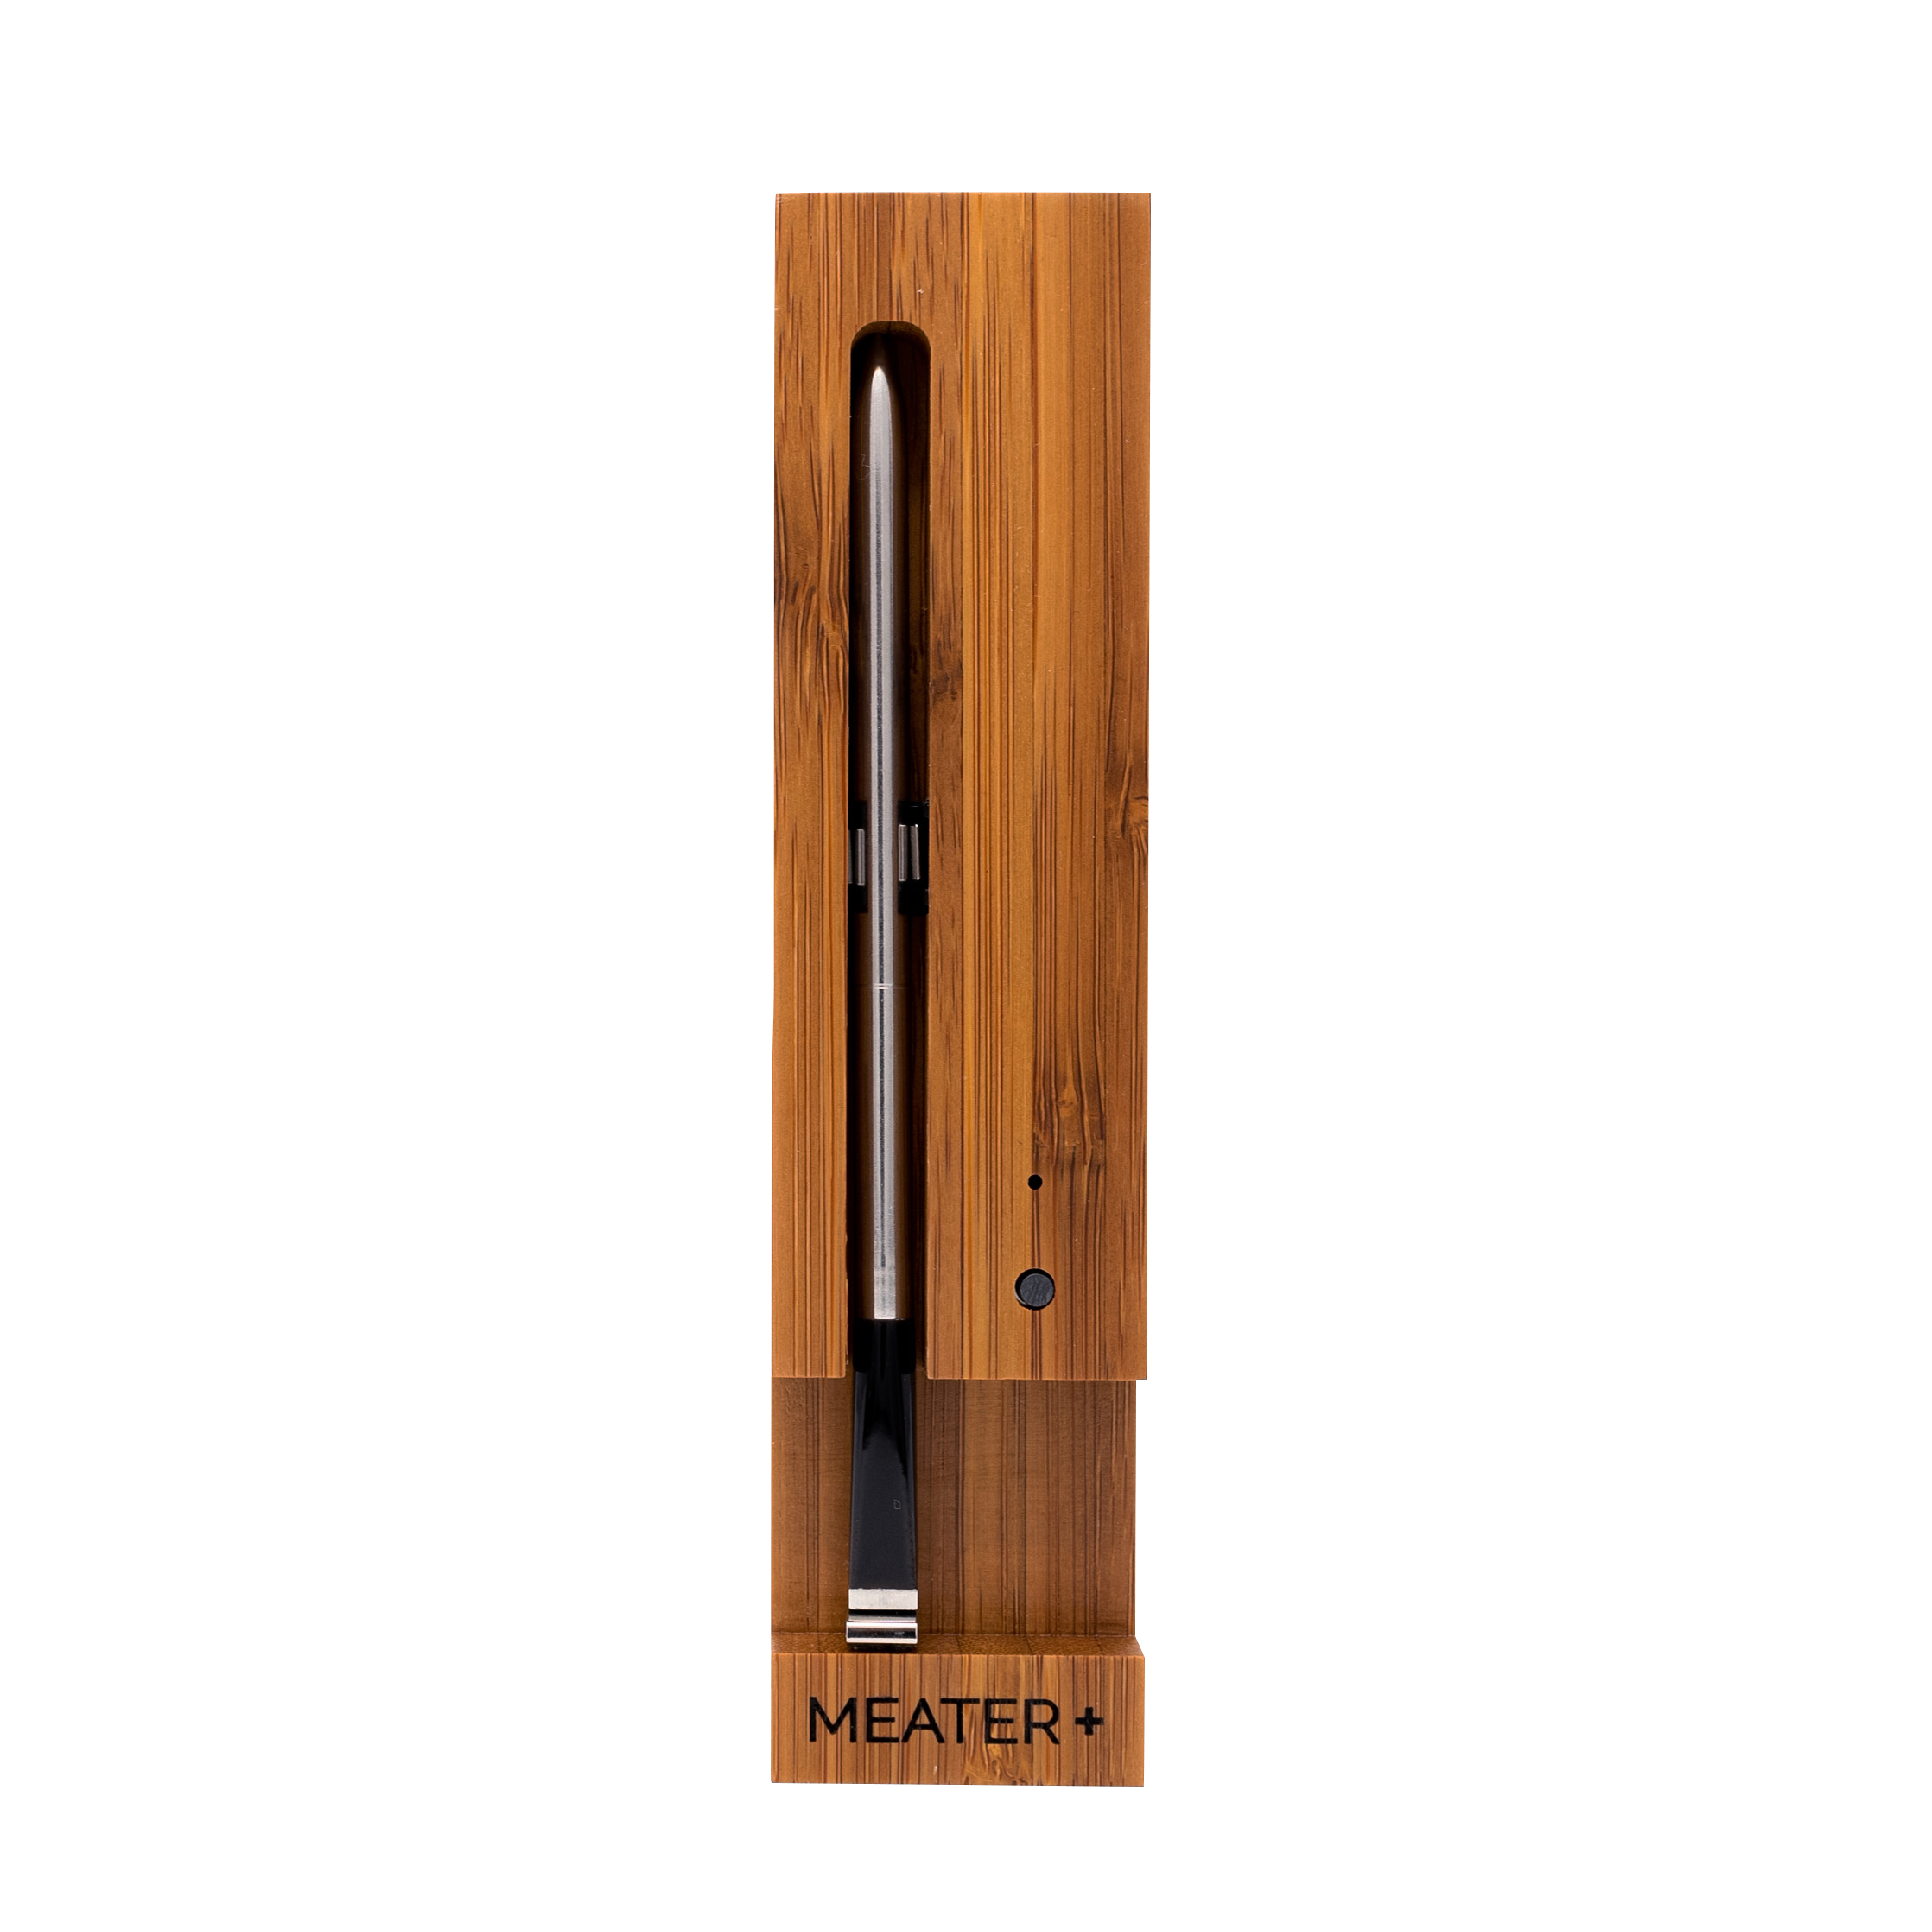 ApptionLabs Meater+ - Kabelloses und smartes Fleisch-Thermometer 50 Meter lange Reichweite - 1x Thermometer